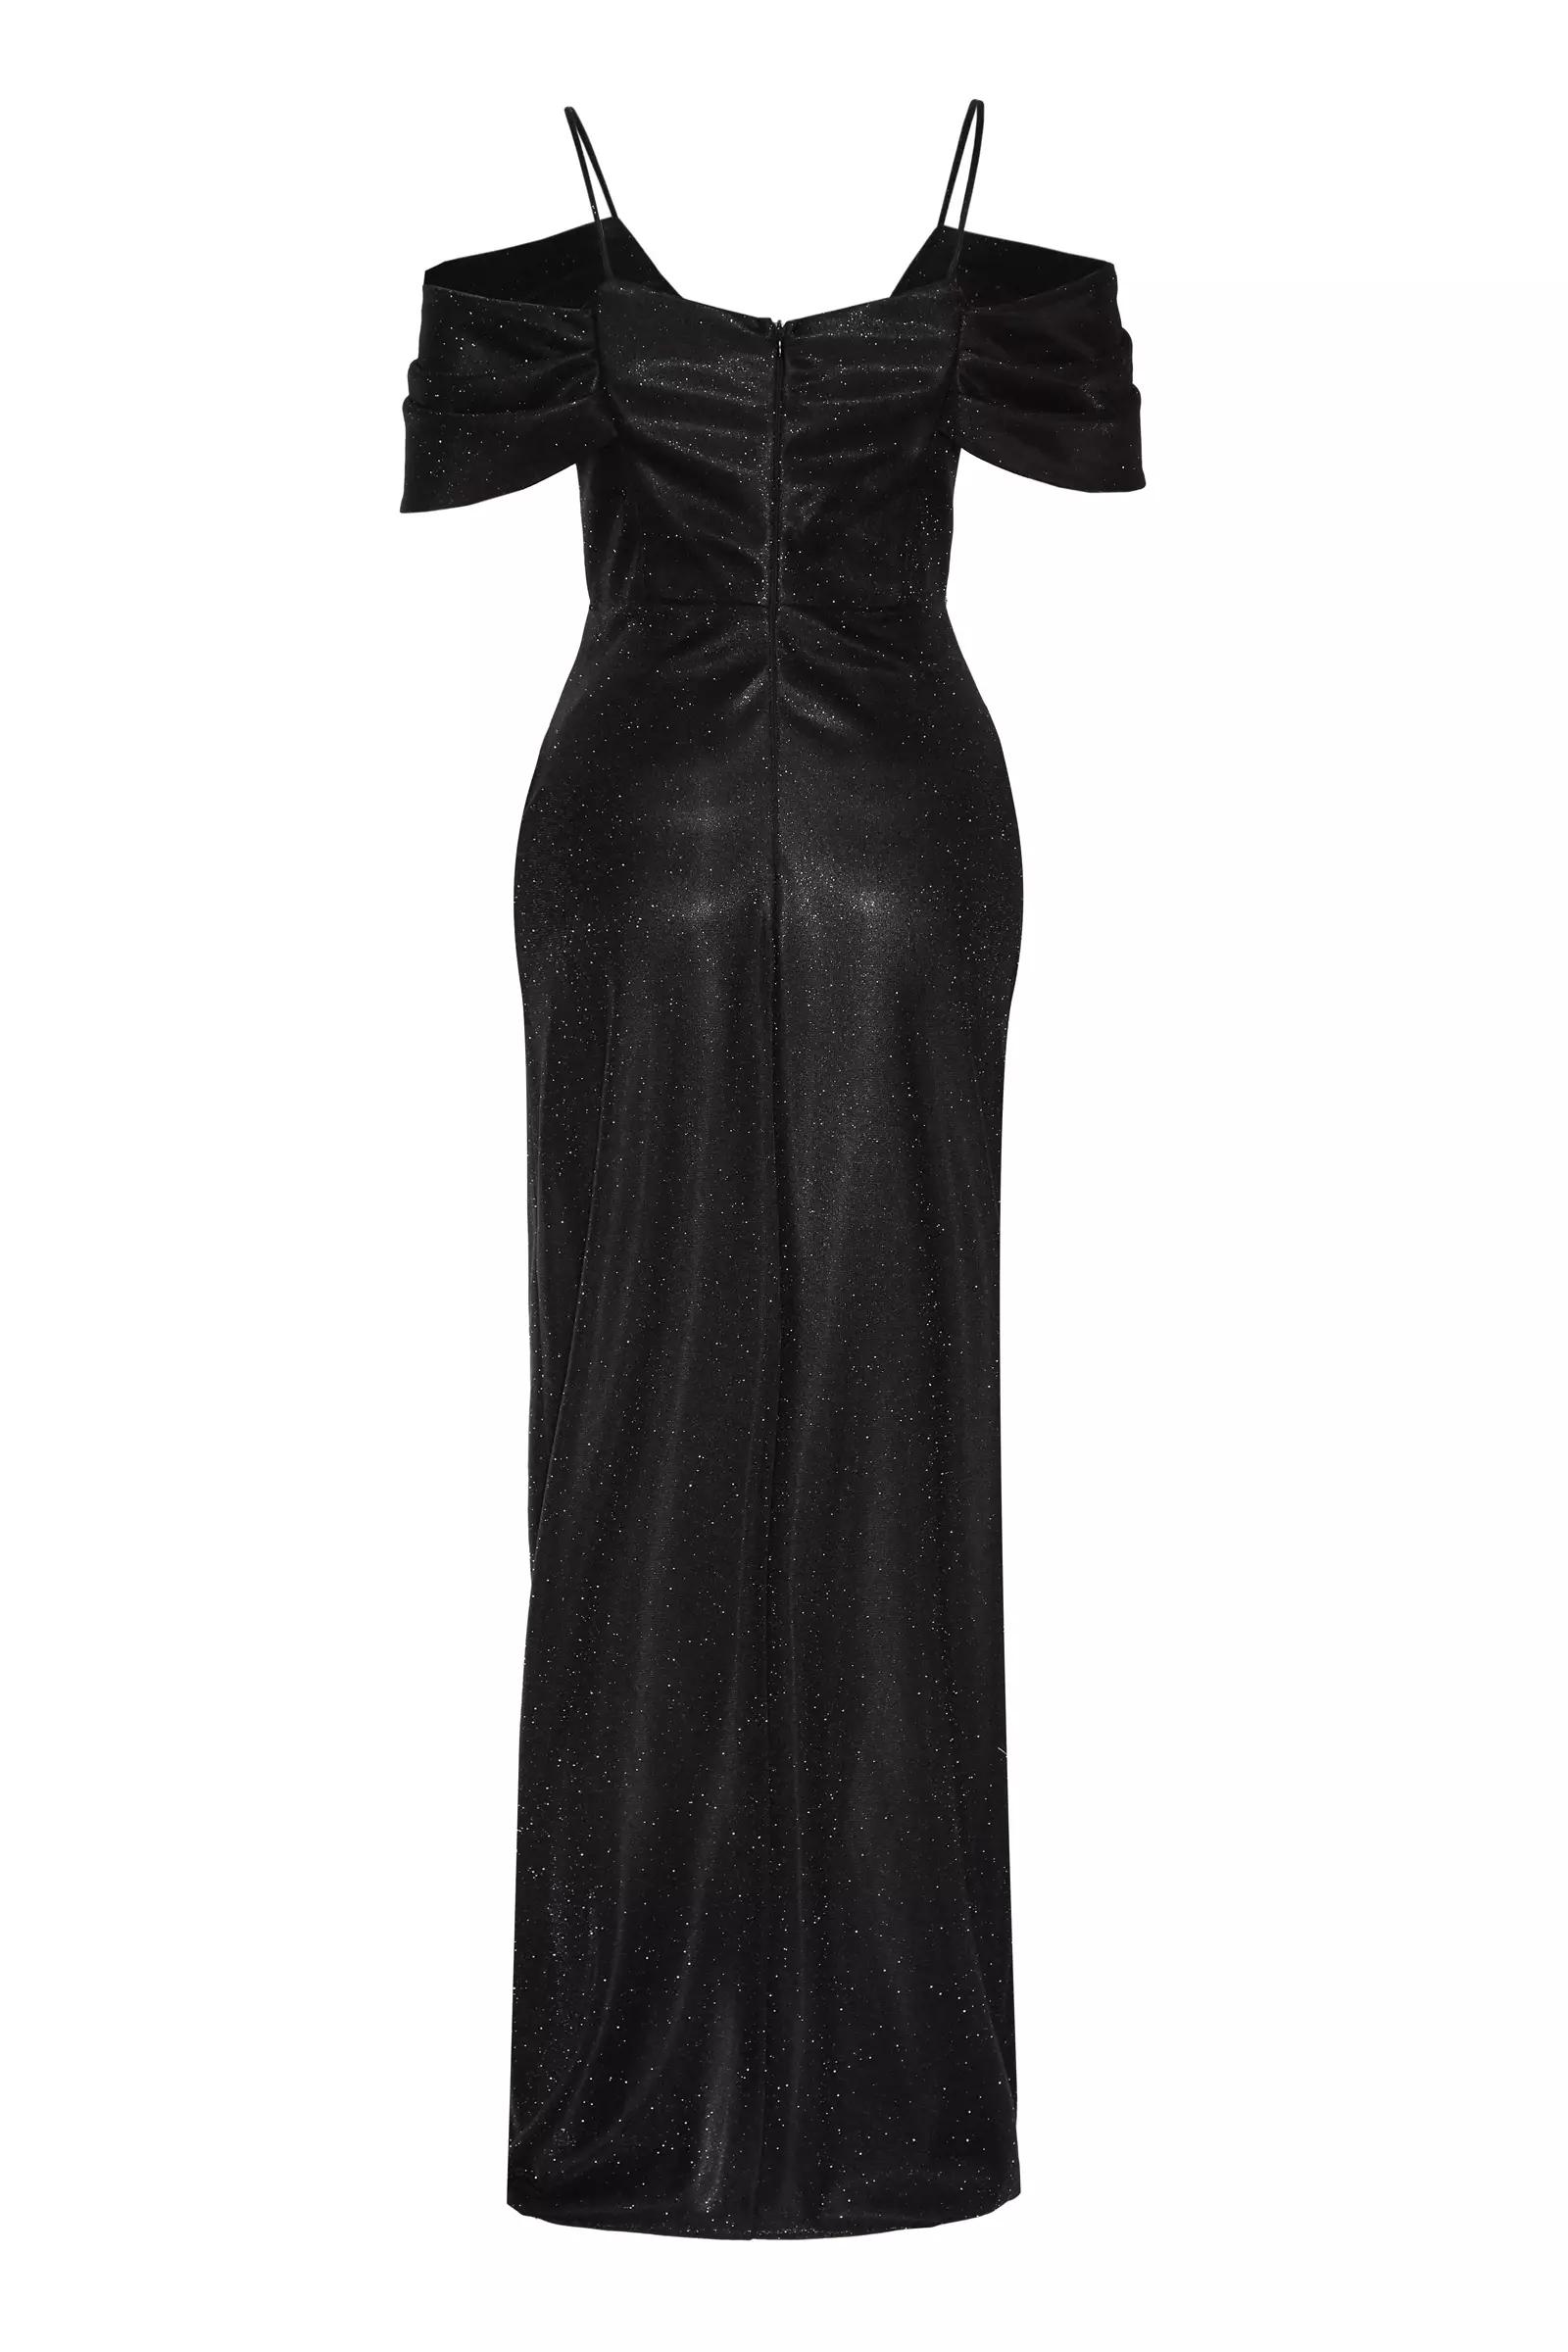 Black plus size glare sleeveless long dress